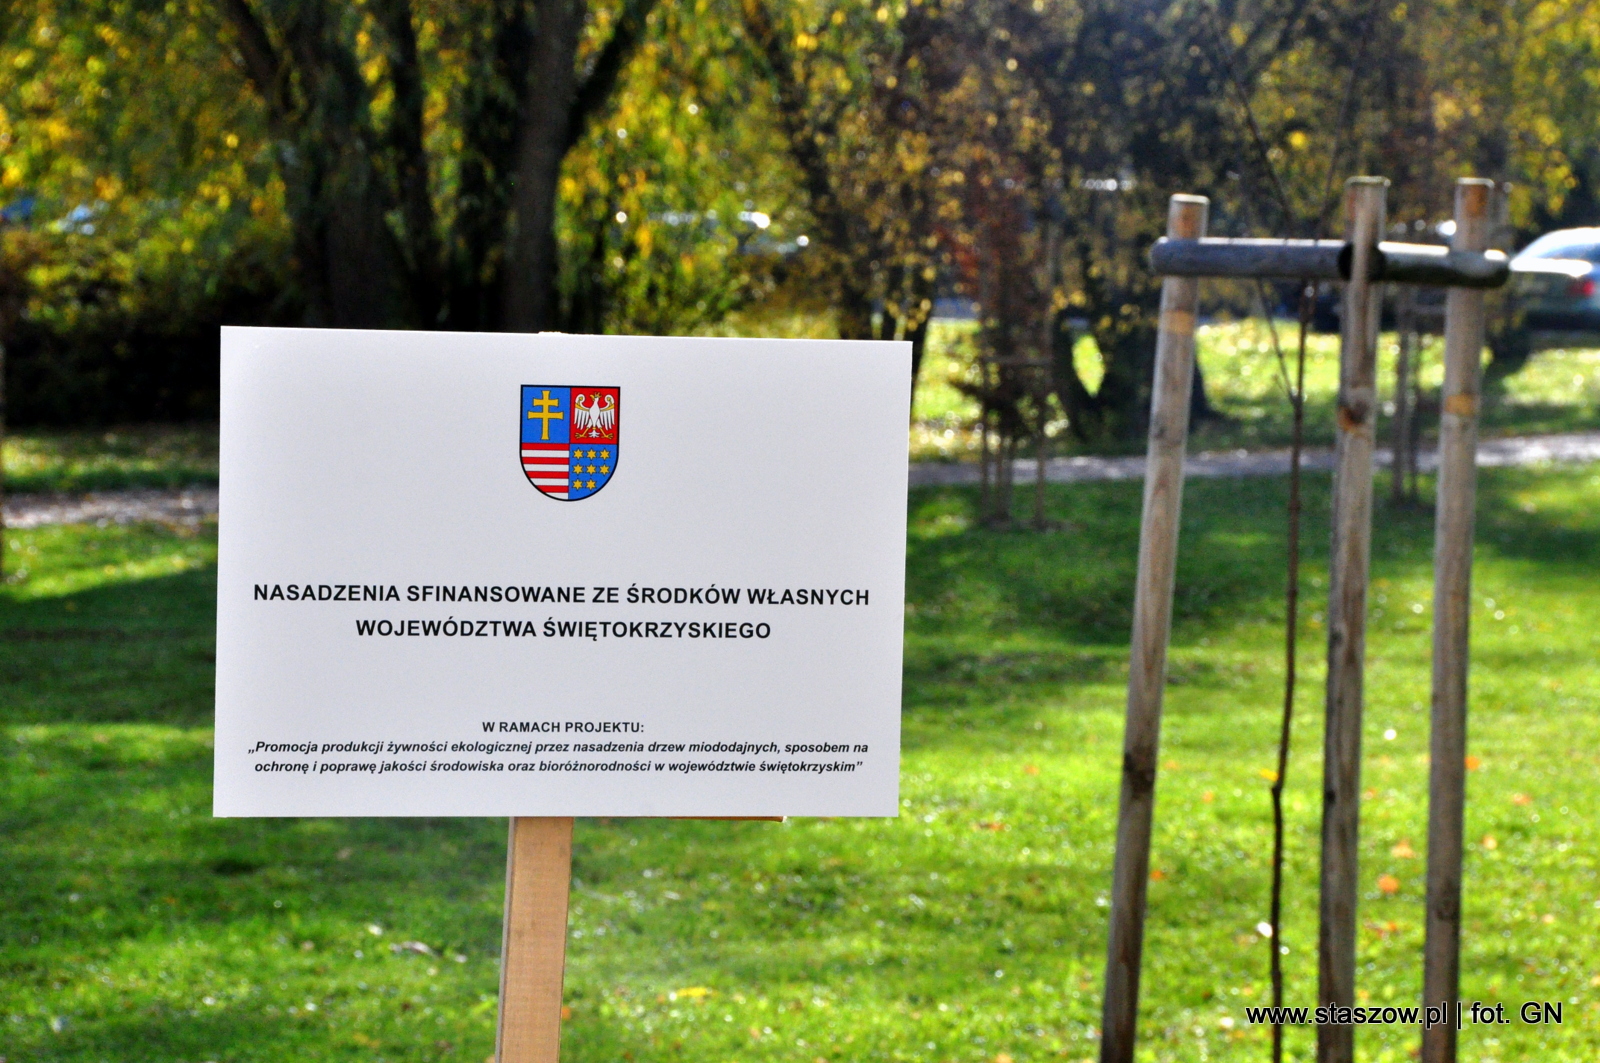 Tabliczka informująca, że nasadzenia zostały sfinansowane ze środków własnych Województwa Świętokrzyskiego